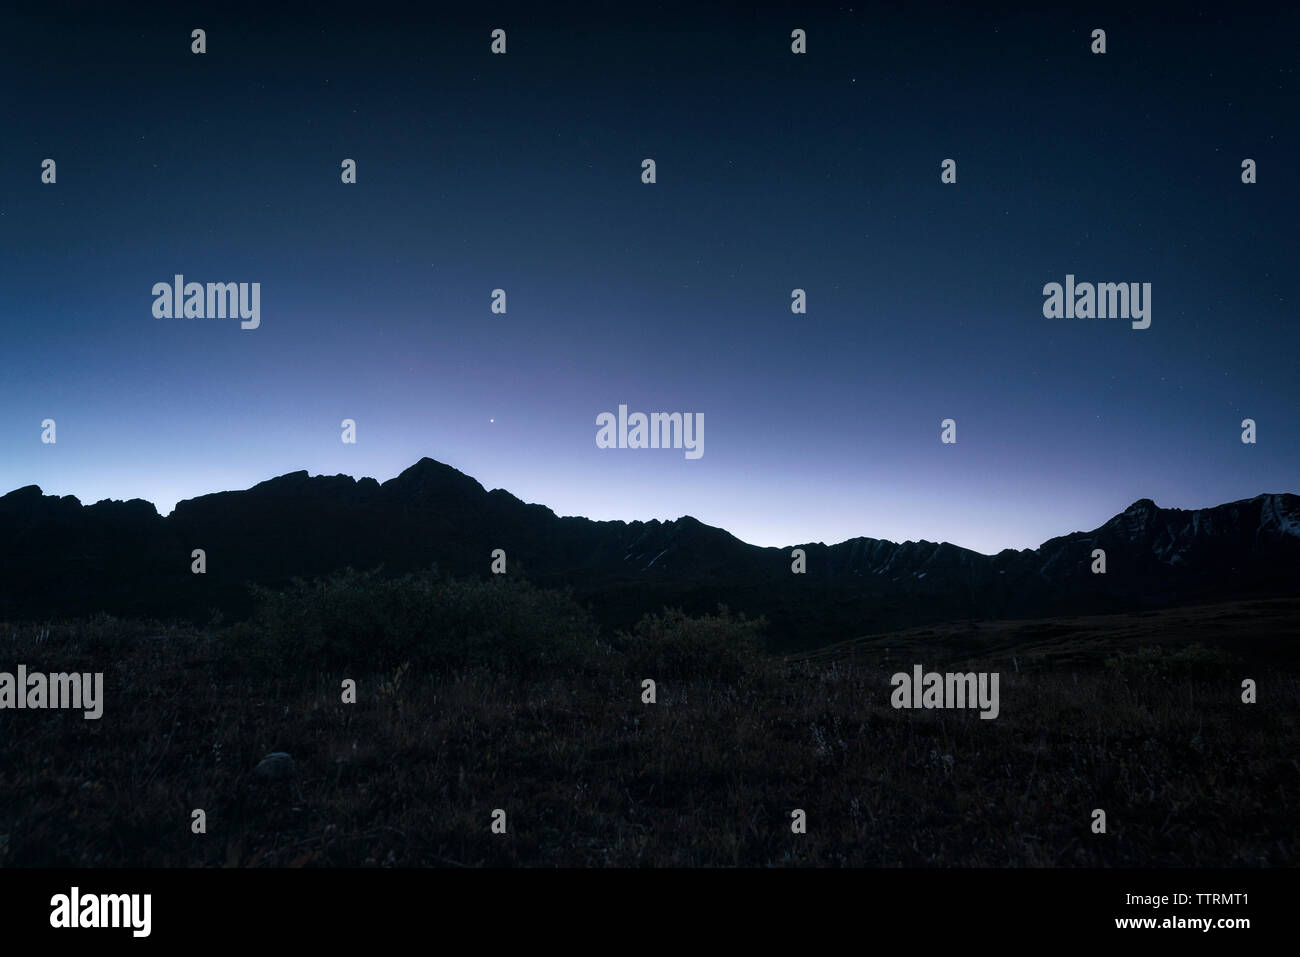 Low Angle View Berg von Silhouette gegen den Himmel bei Nacht Stockfoto